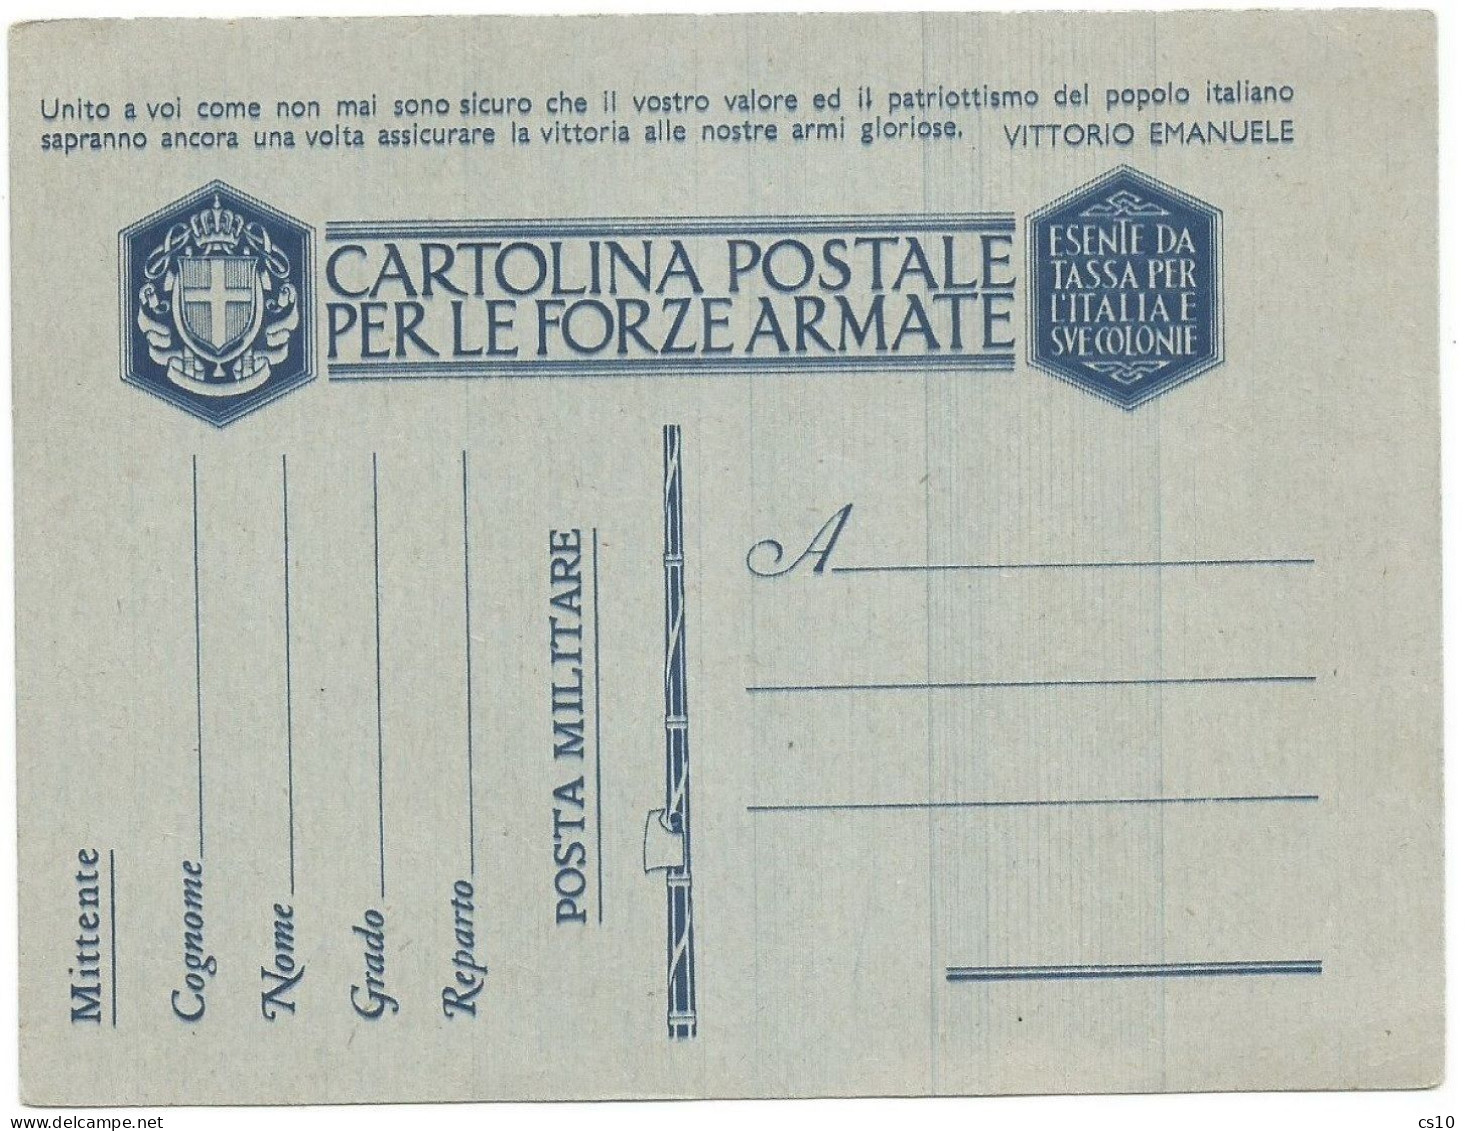 Cartolina Postale FFAA Franchigia Nuova - Varietà Strisciate Di Colore Verticali - Stamped Stationery